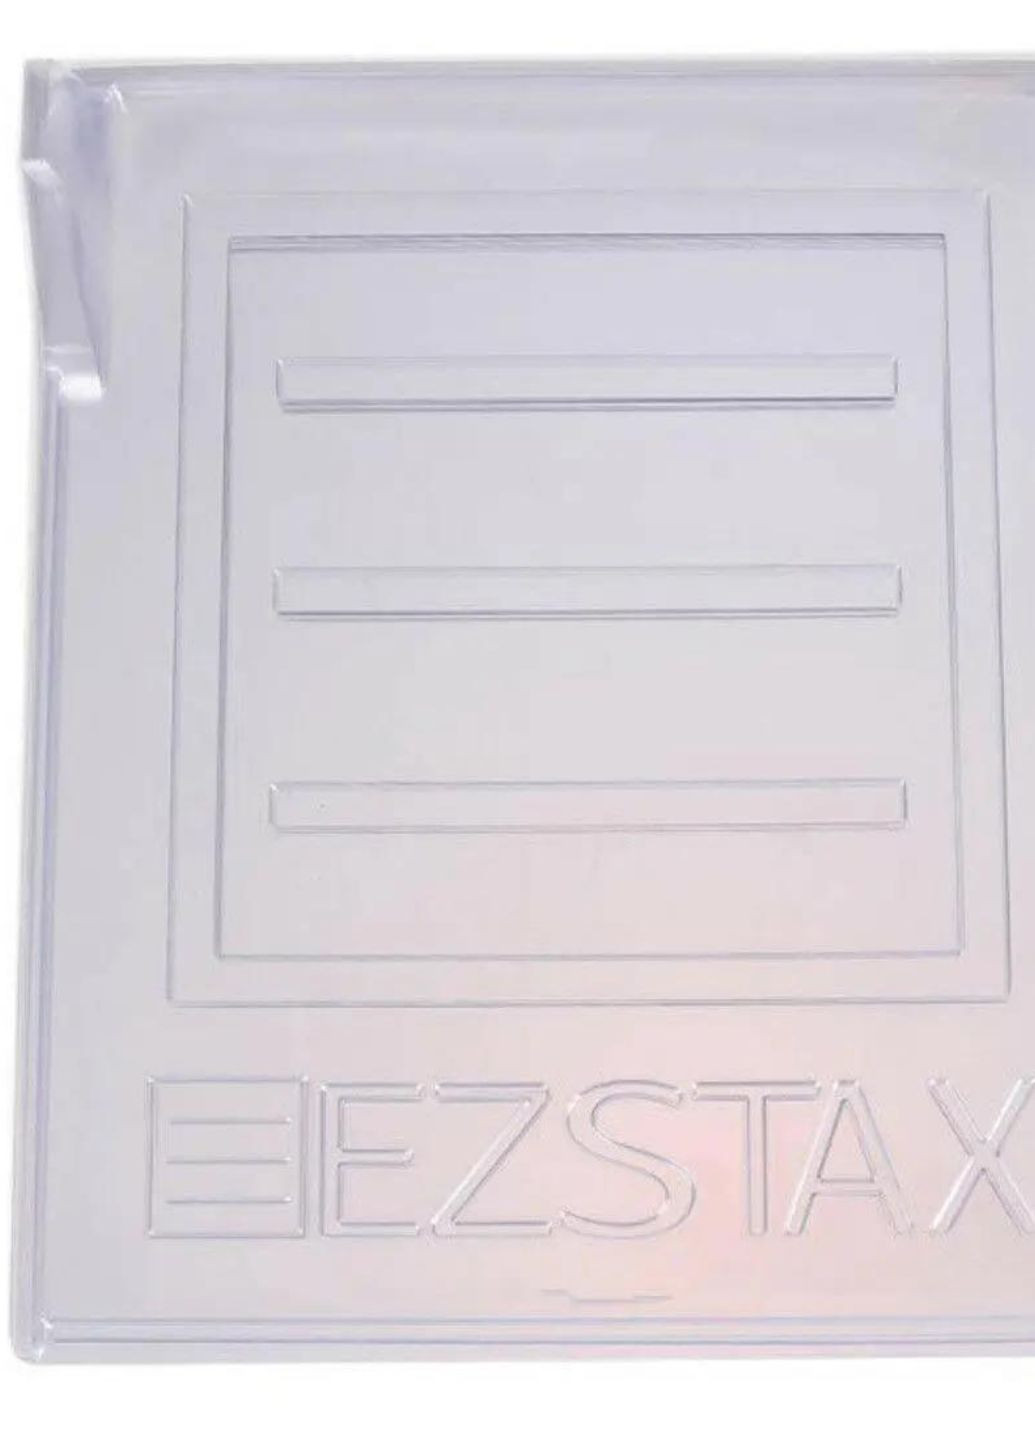 Органайзер для хранения одежды EZSTAX 10шт. No Brand (294085673)